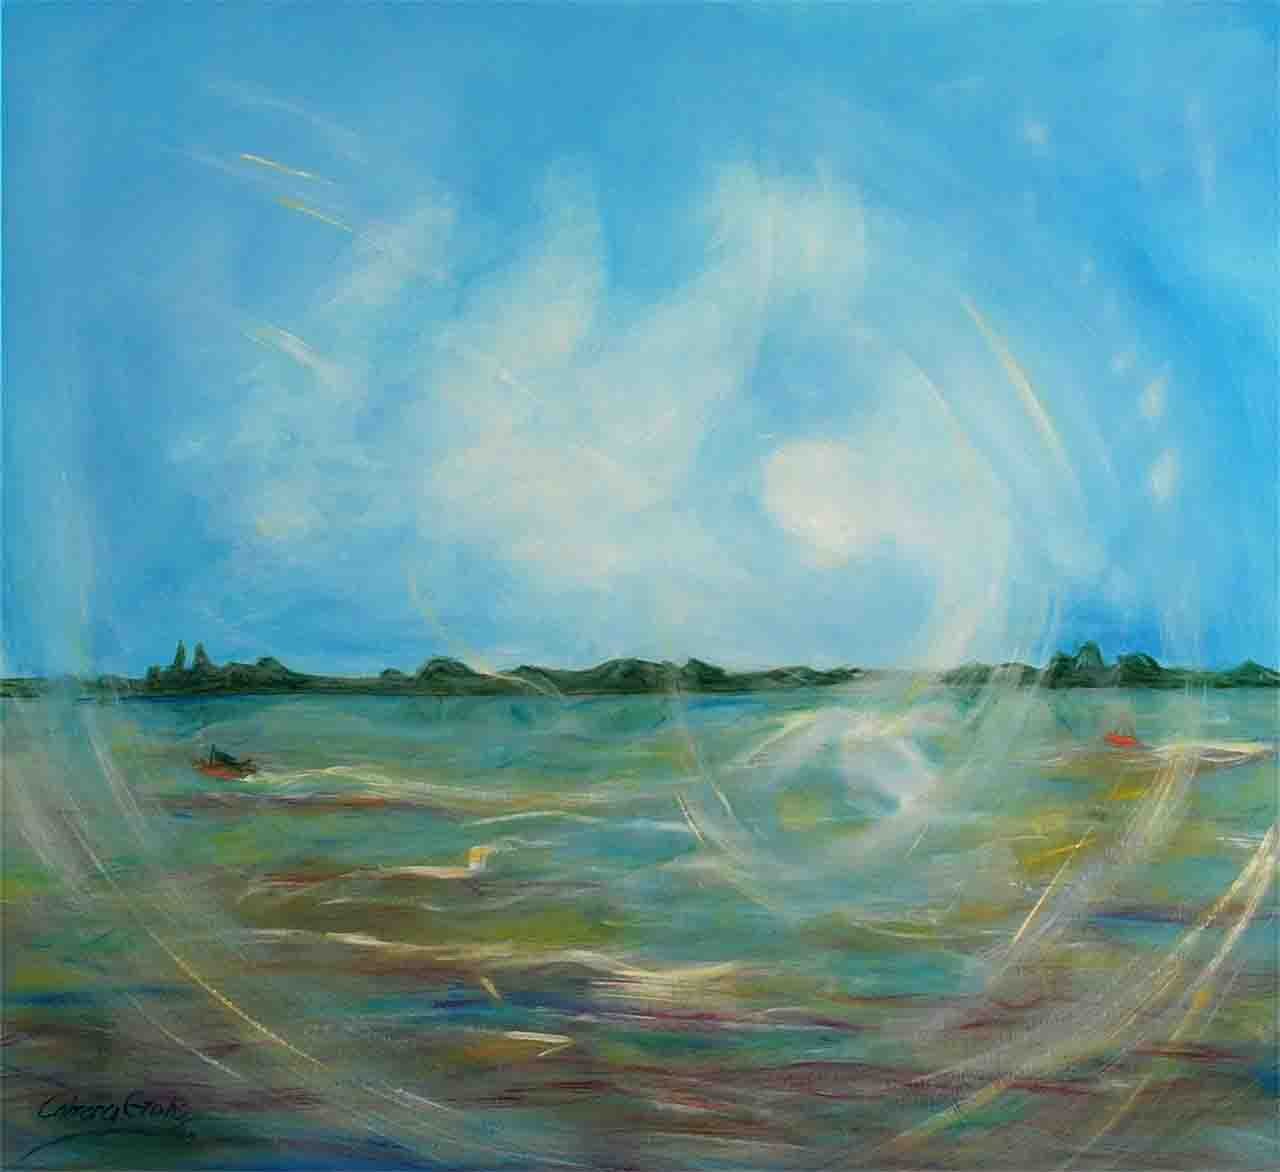 Pintura cuadrada grande, sobre lienzo, de un paisaje Sudamericano que se ve fantasmal con una niebla mágica  sobre la costa del rio Párana